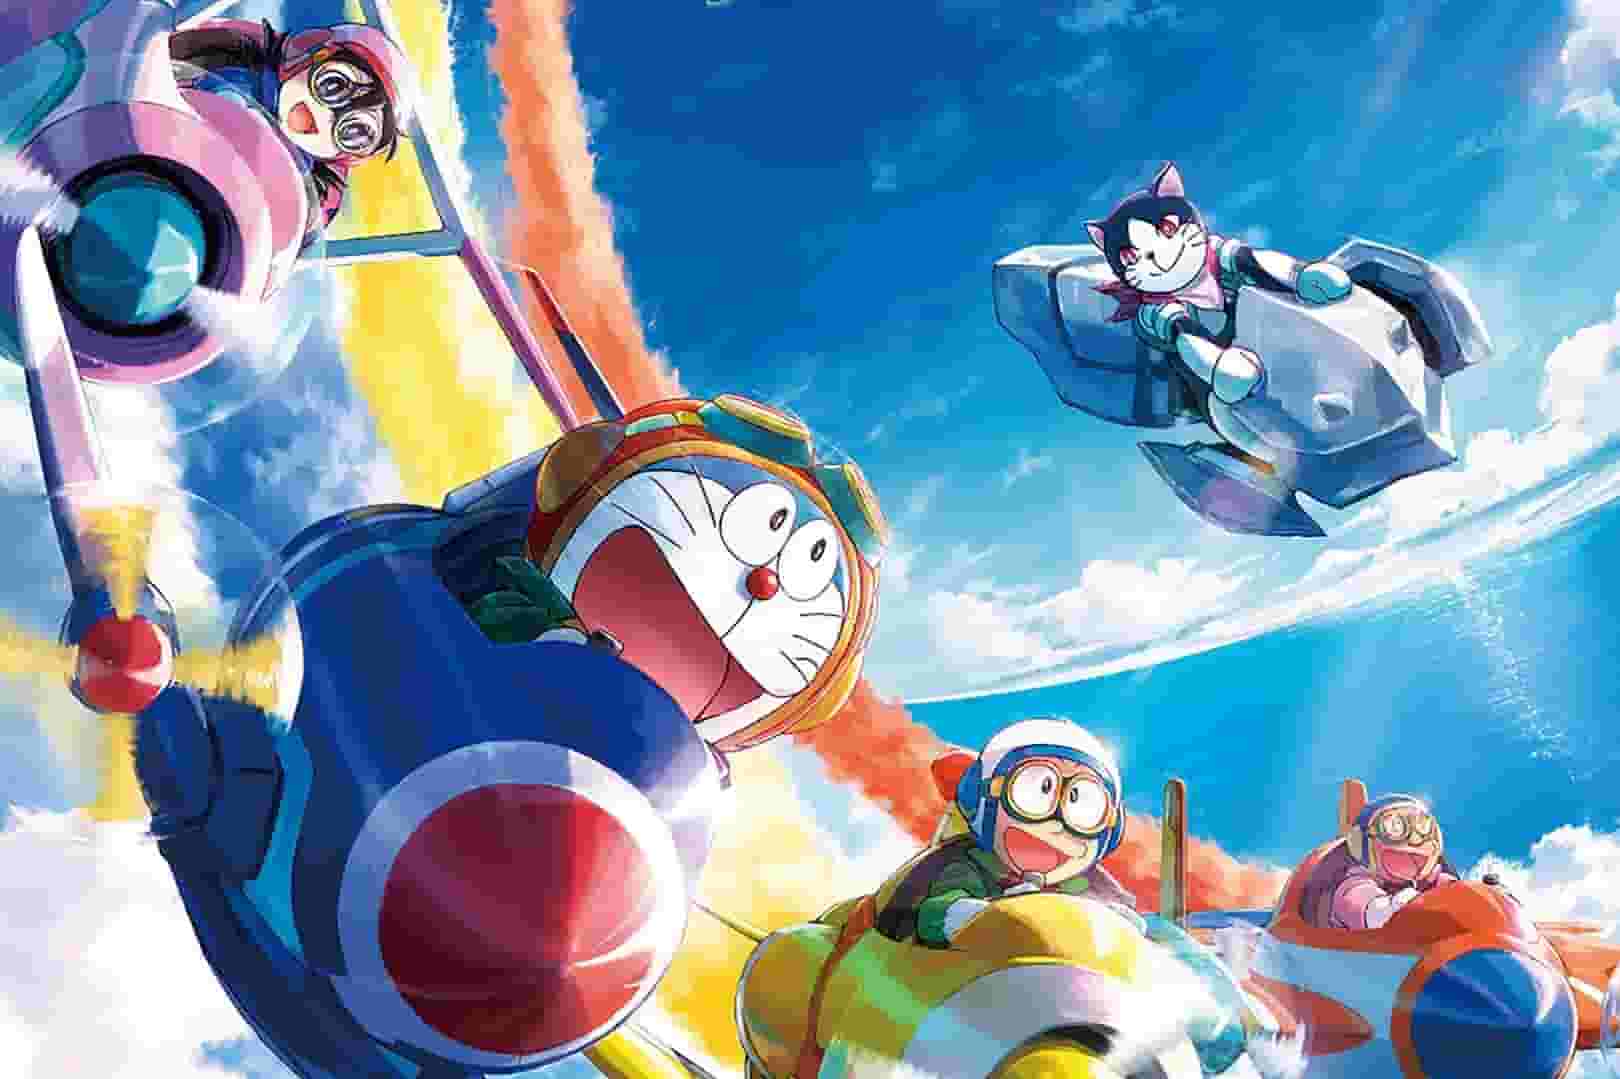 Doraemon 42 đánh bật Conan movie 25 giành ngôi vương thể loại anime tại Việt Nam